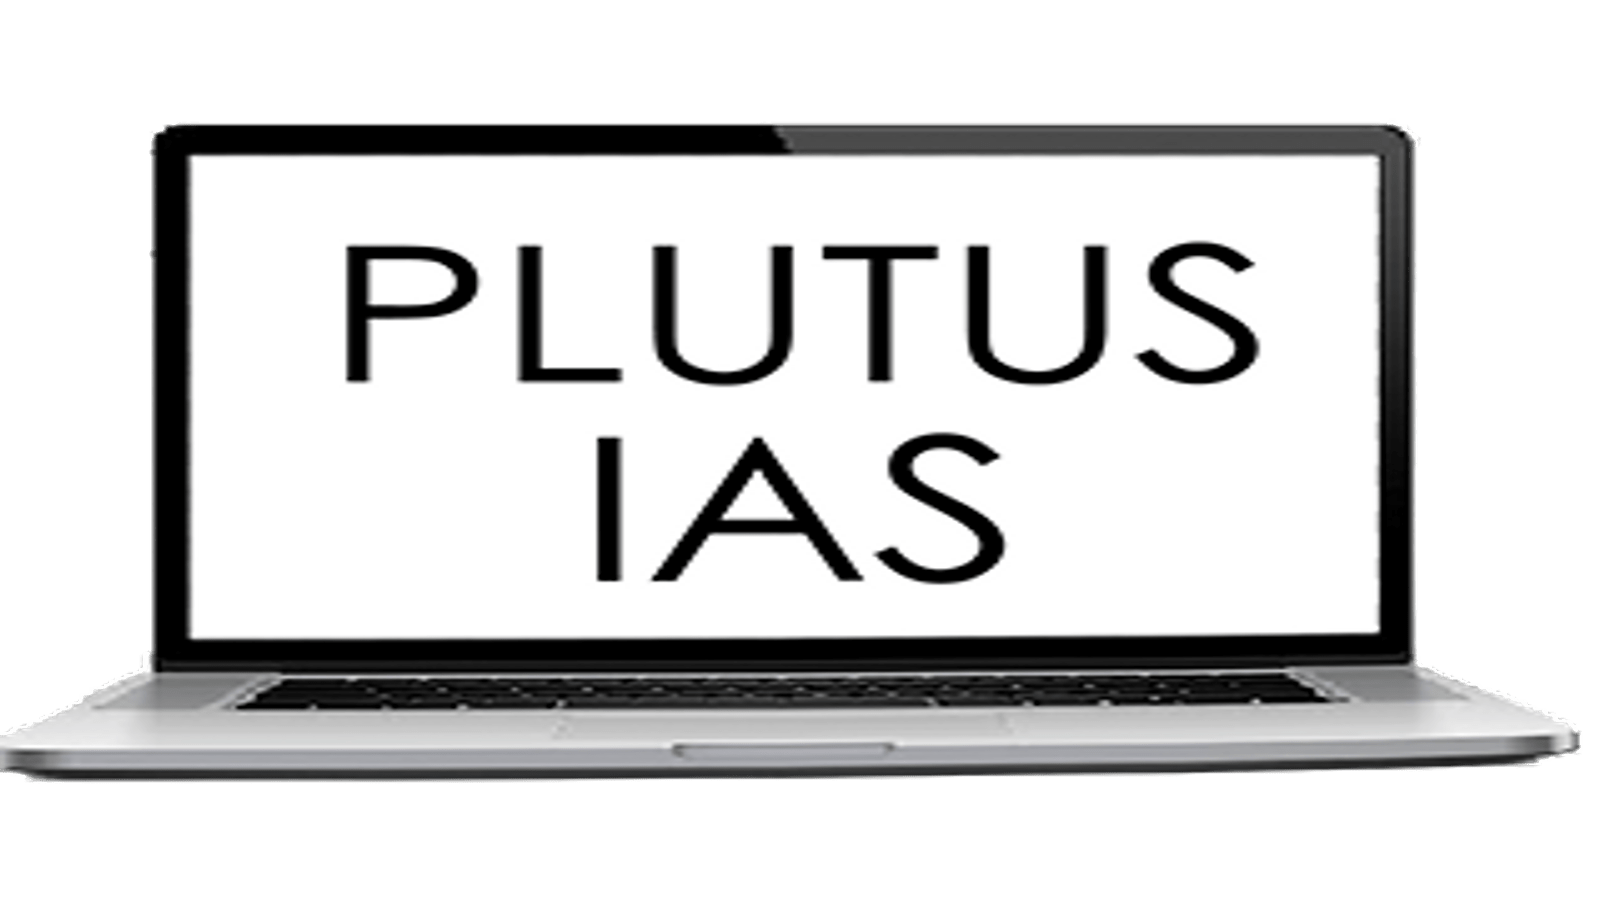 Plutus IAS Online Coaching South India